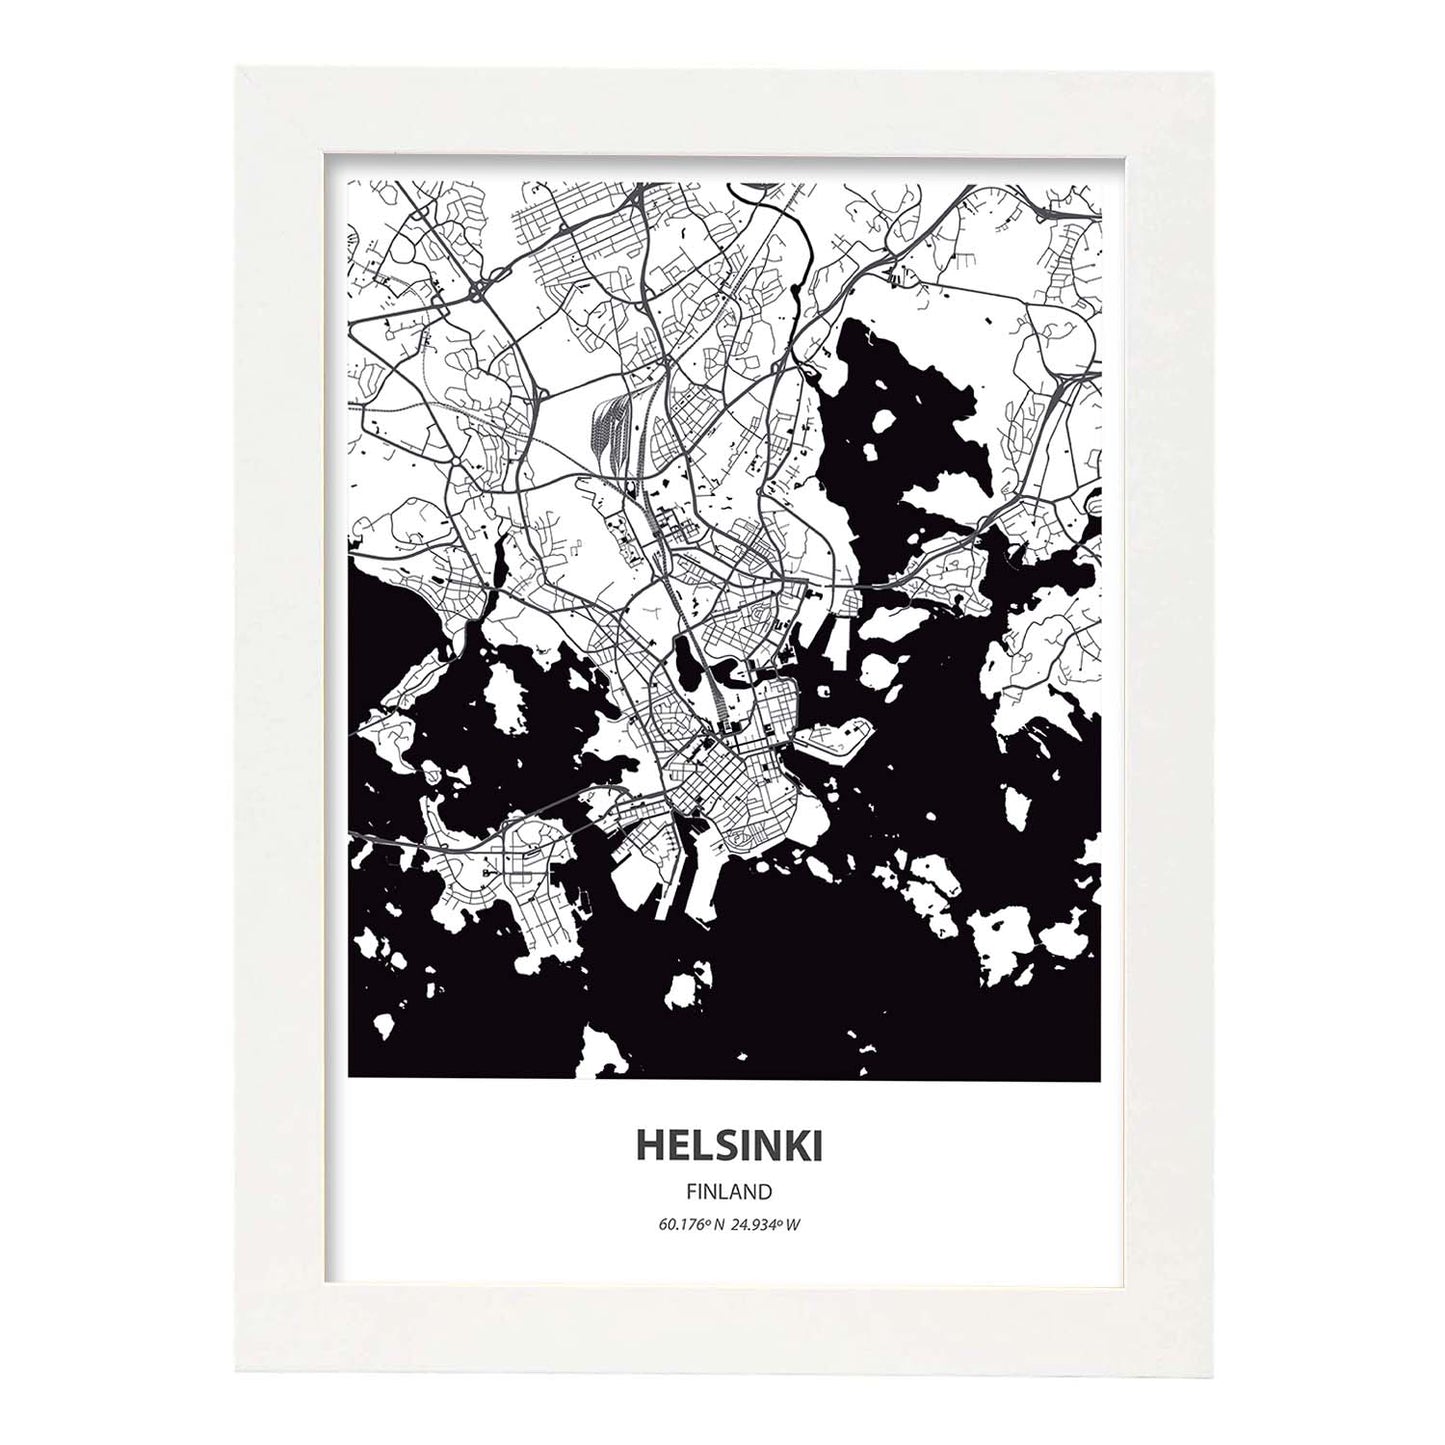 Poster con mapa de Helsinki - Finlandia. Láminas de ciudades del norte de Europa con mares y ríos en color negro.-Artwork-Nacnic-A3-Marco Blanco-Nacnic Estudio SL